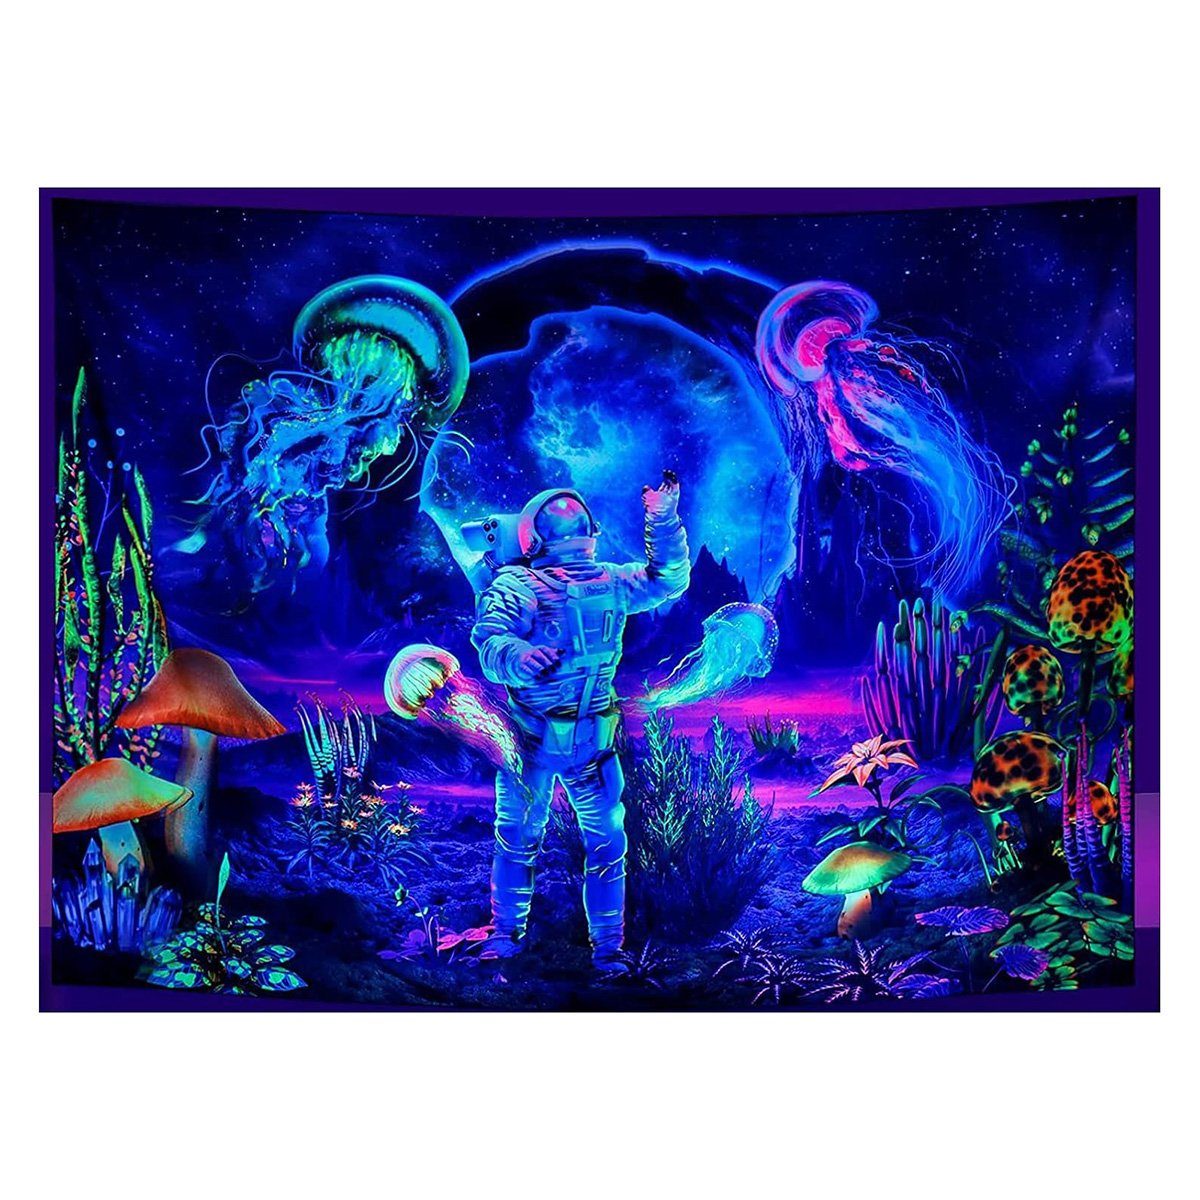 Wandteppich Schwarzlicht-Astronauten-Wandteppich (Astronaut, 200 x 150 cm), yozhiqu, Quallen-Wandteppich, Neon-Galaxie-Weltraum-Wandteppich, Wandbehang